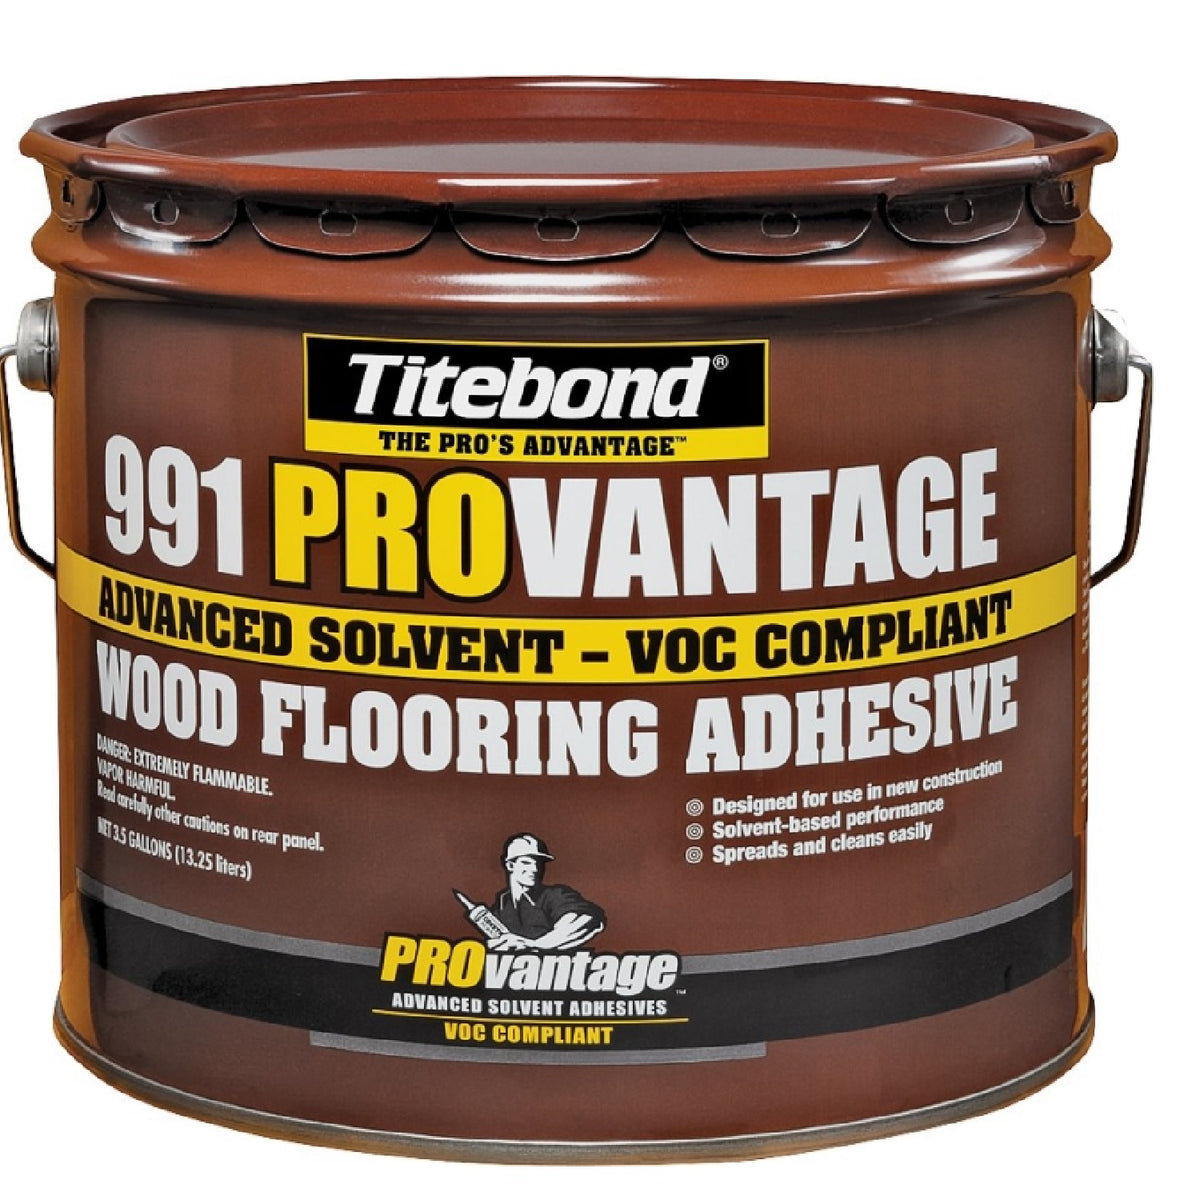 Titebond 8179 Liquid Wood Floor Adhesive, 3.5 gal Pail